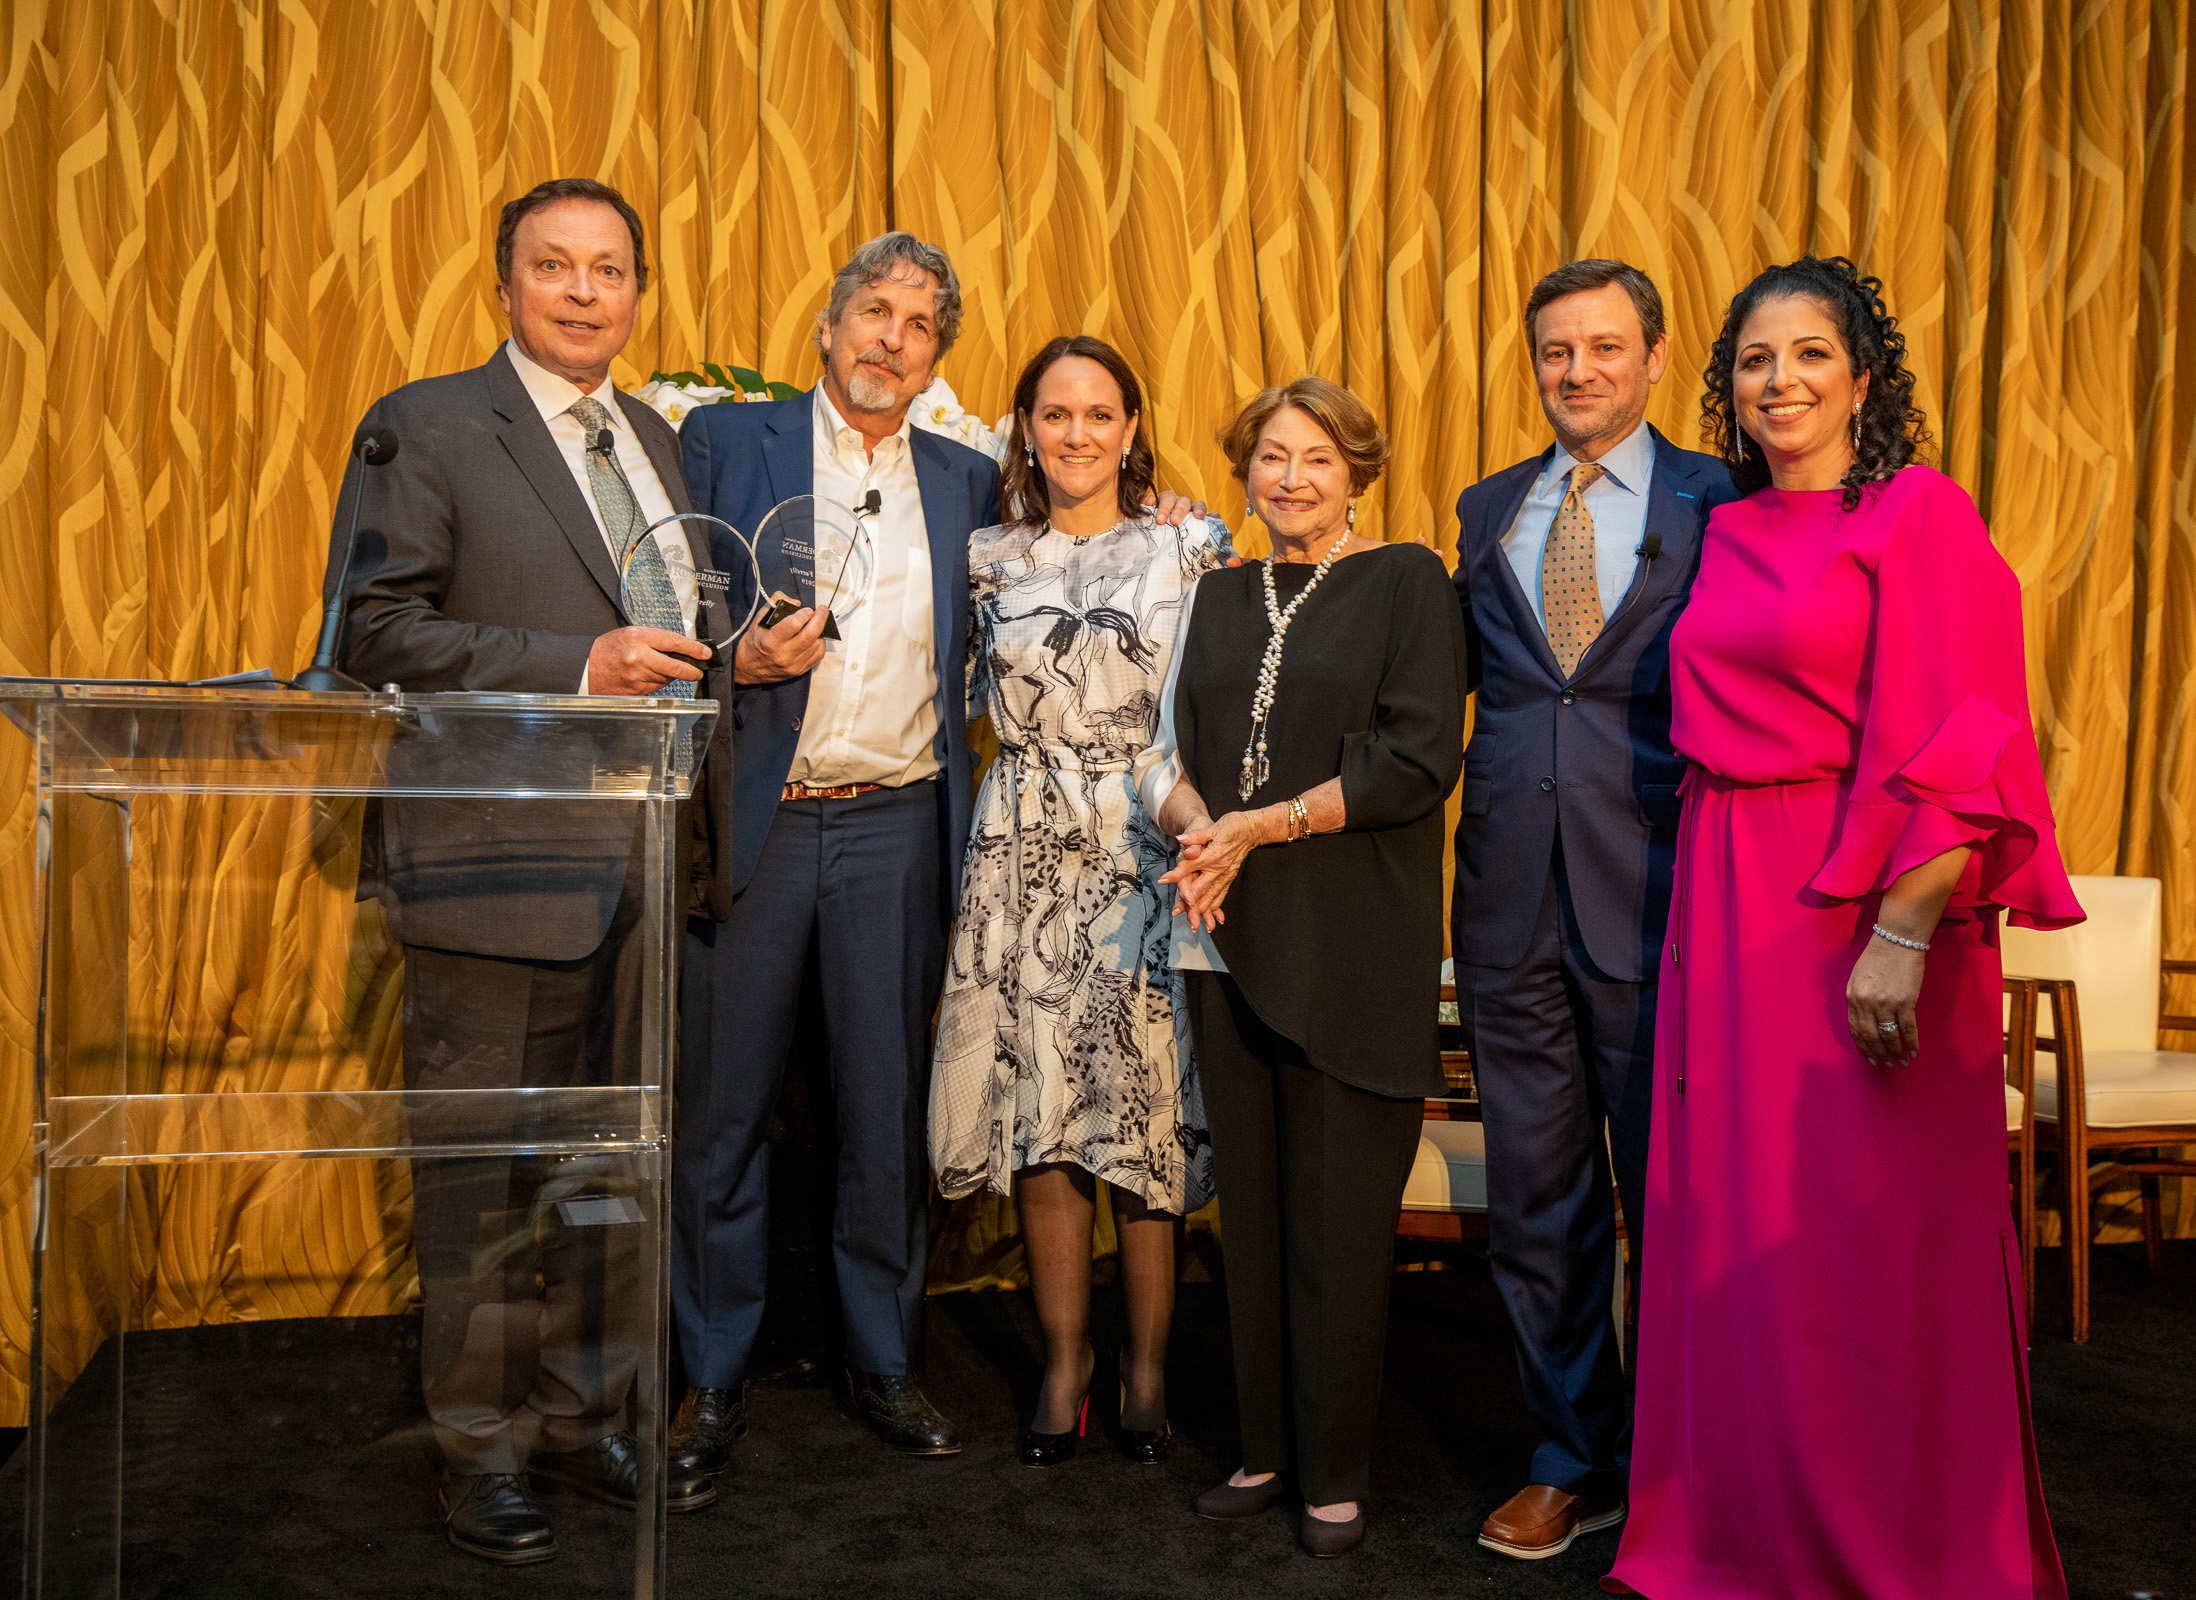 2019 Morton E. Ruderman Award in Inclusion Ceremony